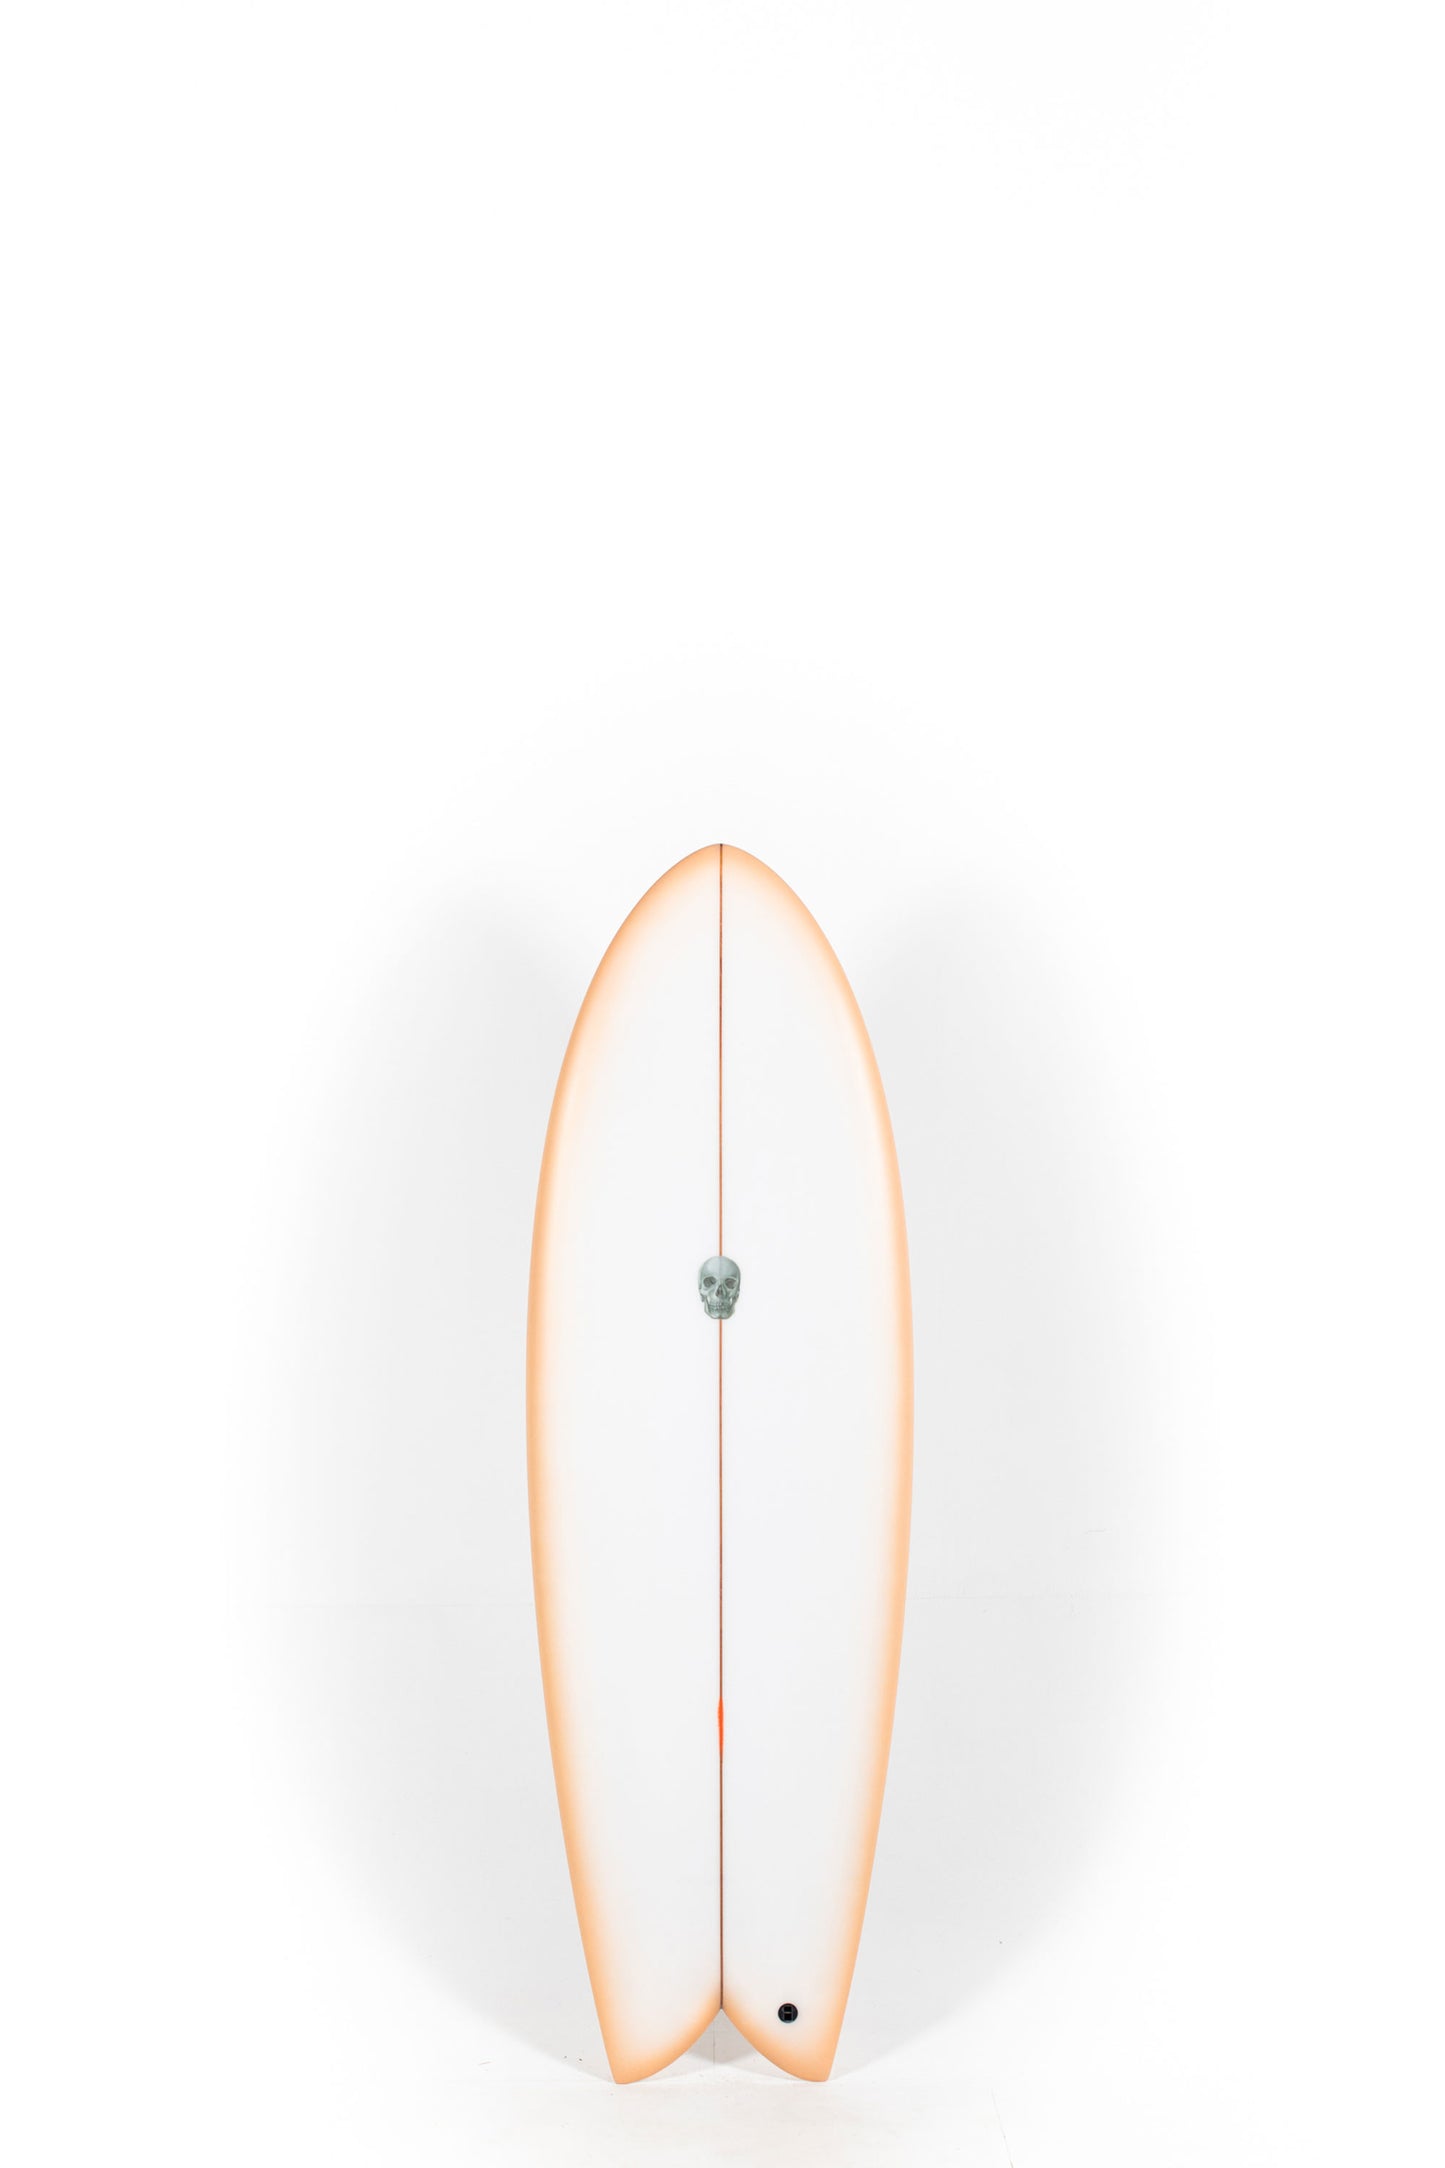 Pukas Surf Shop - Christenson Surfboards - MYCONAUT - 5'5" x 20 1/4 x 2 7/16 - CX04476